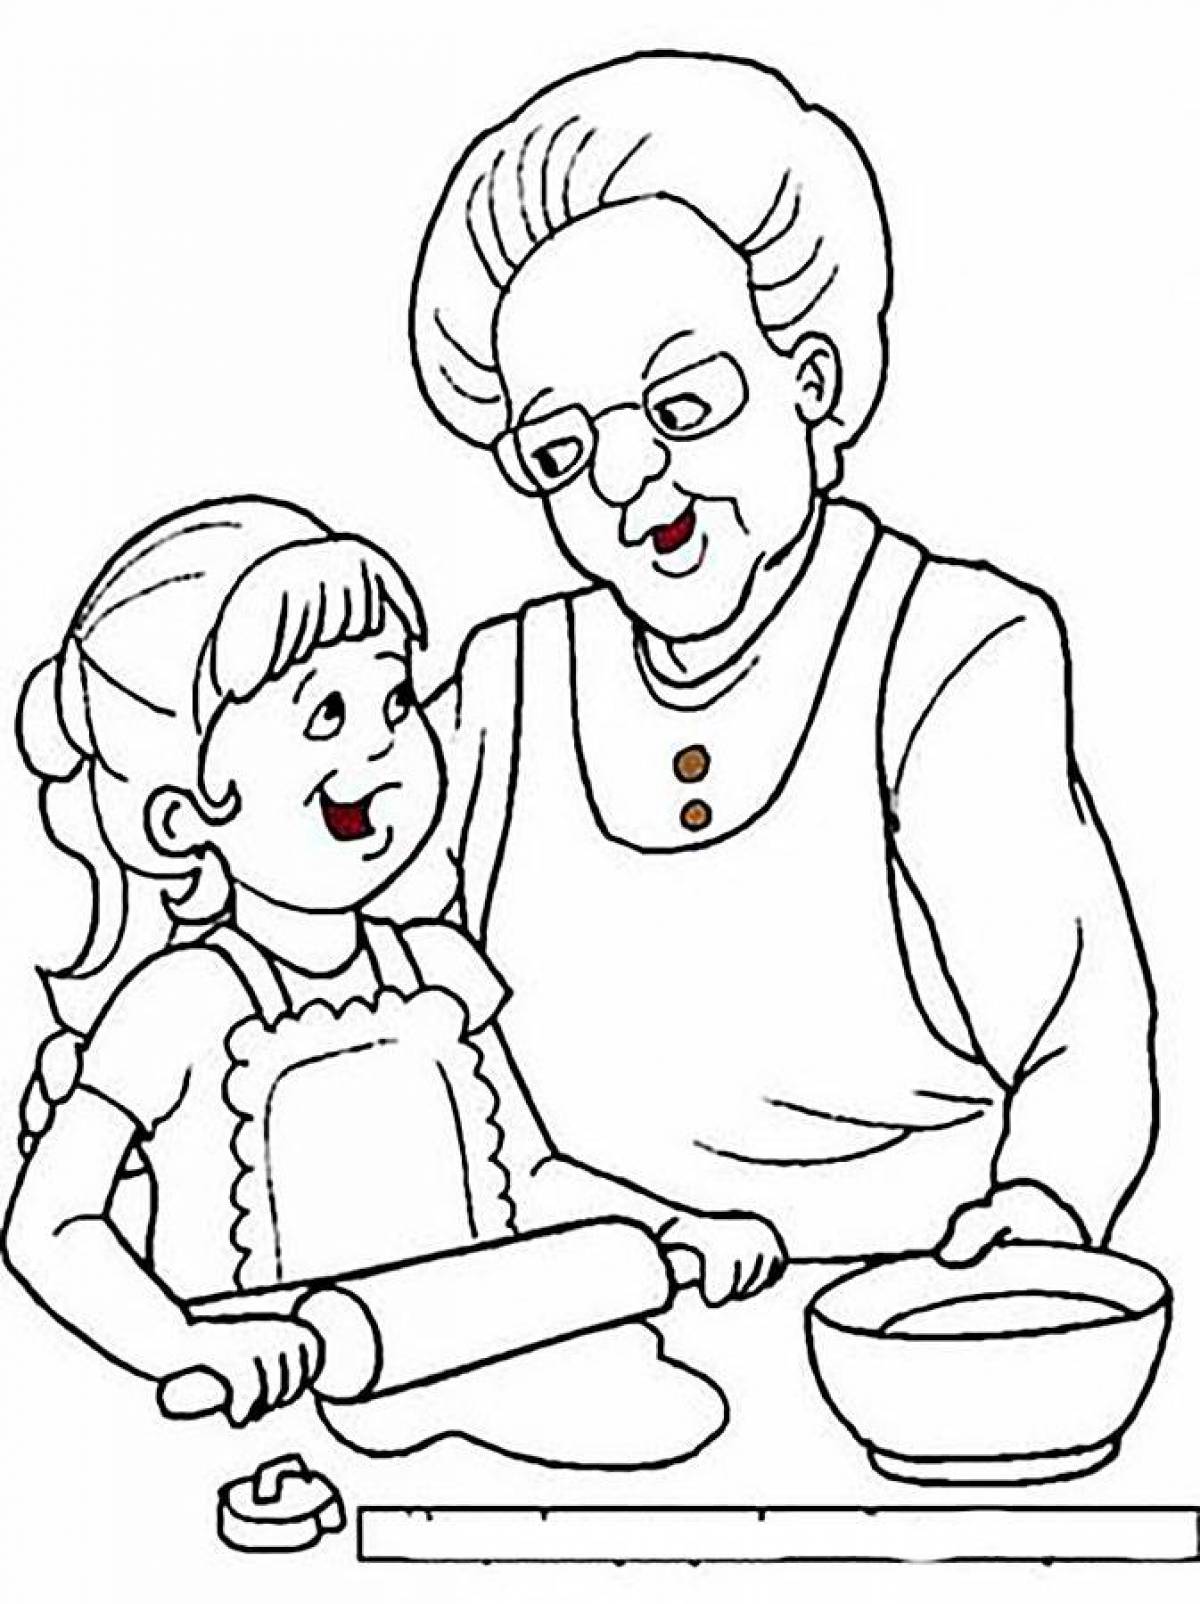 Happy grandma coloring page